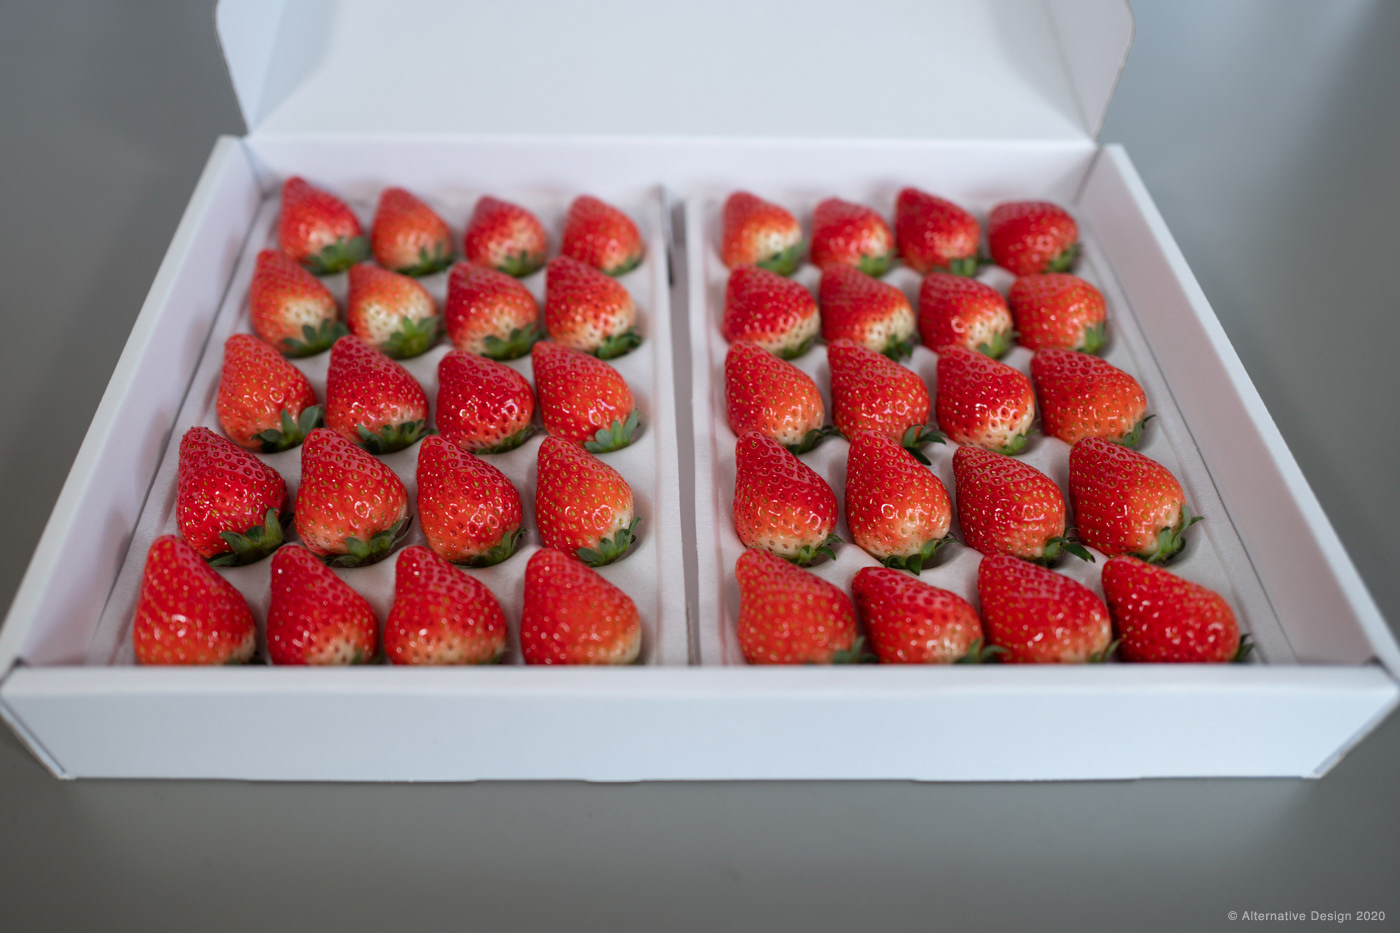 Starwberry in the original box